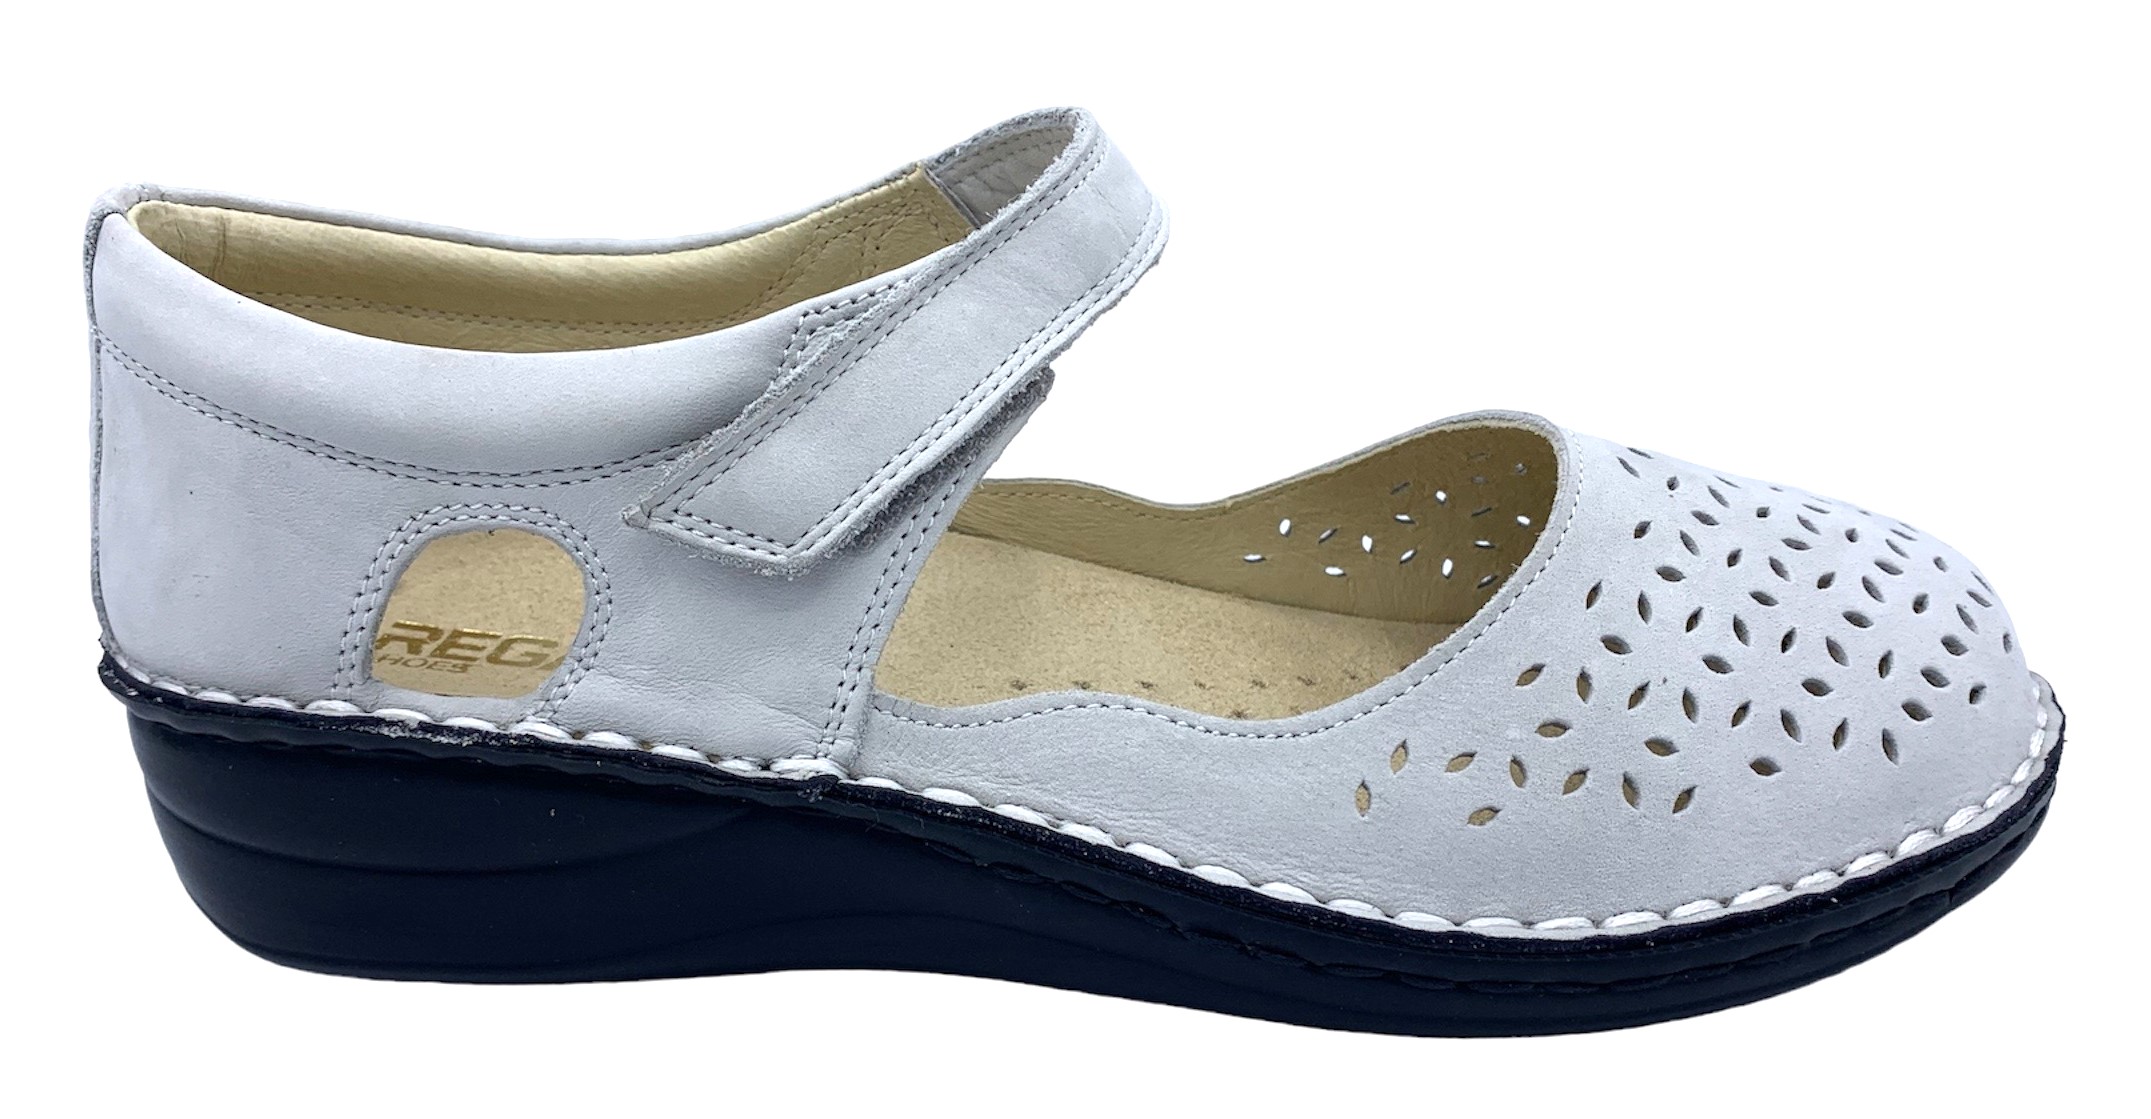 Dámská kožená zdravotní obuv REGA shoes K691 šedá Velikost: 37 (EU)